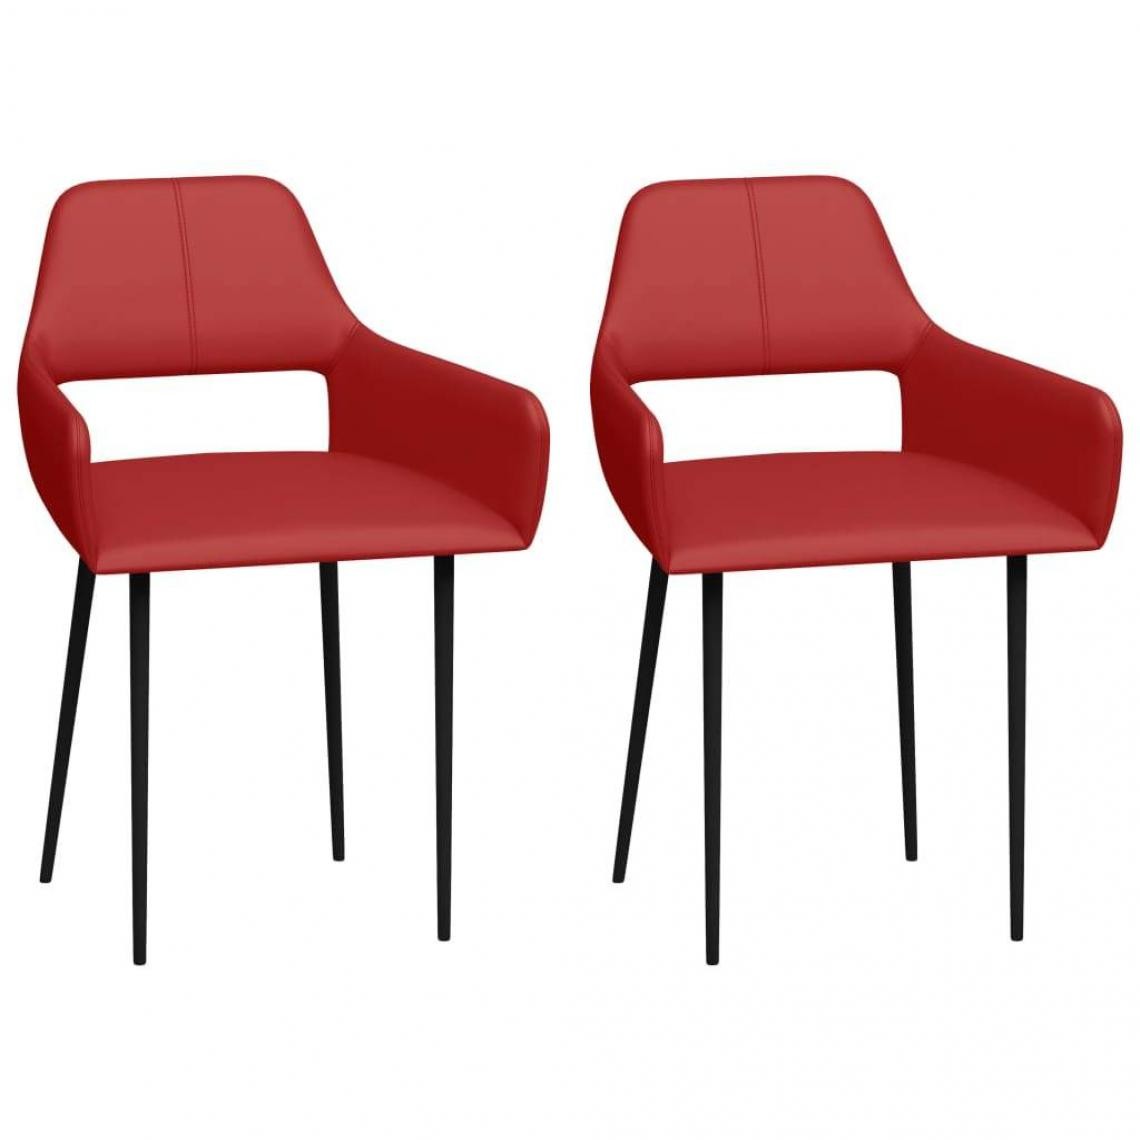 Decoshop26 - Lot de 2 chaises de salle à manger cuisine design moderne similicuir rouge CDS021025 - Chaises